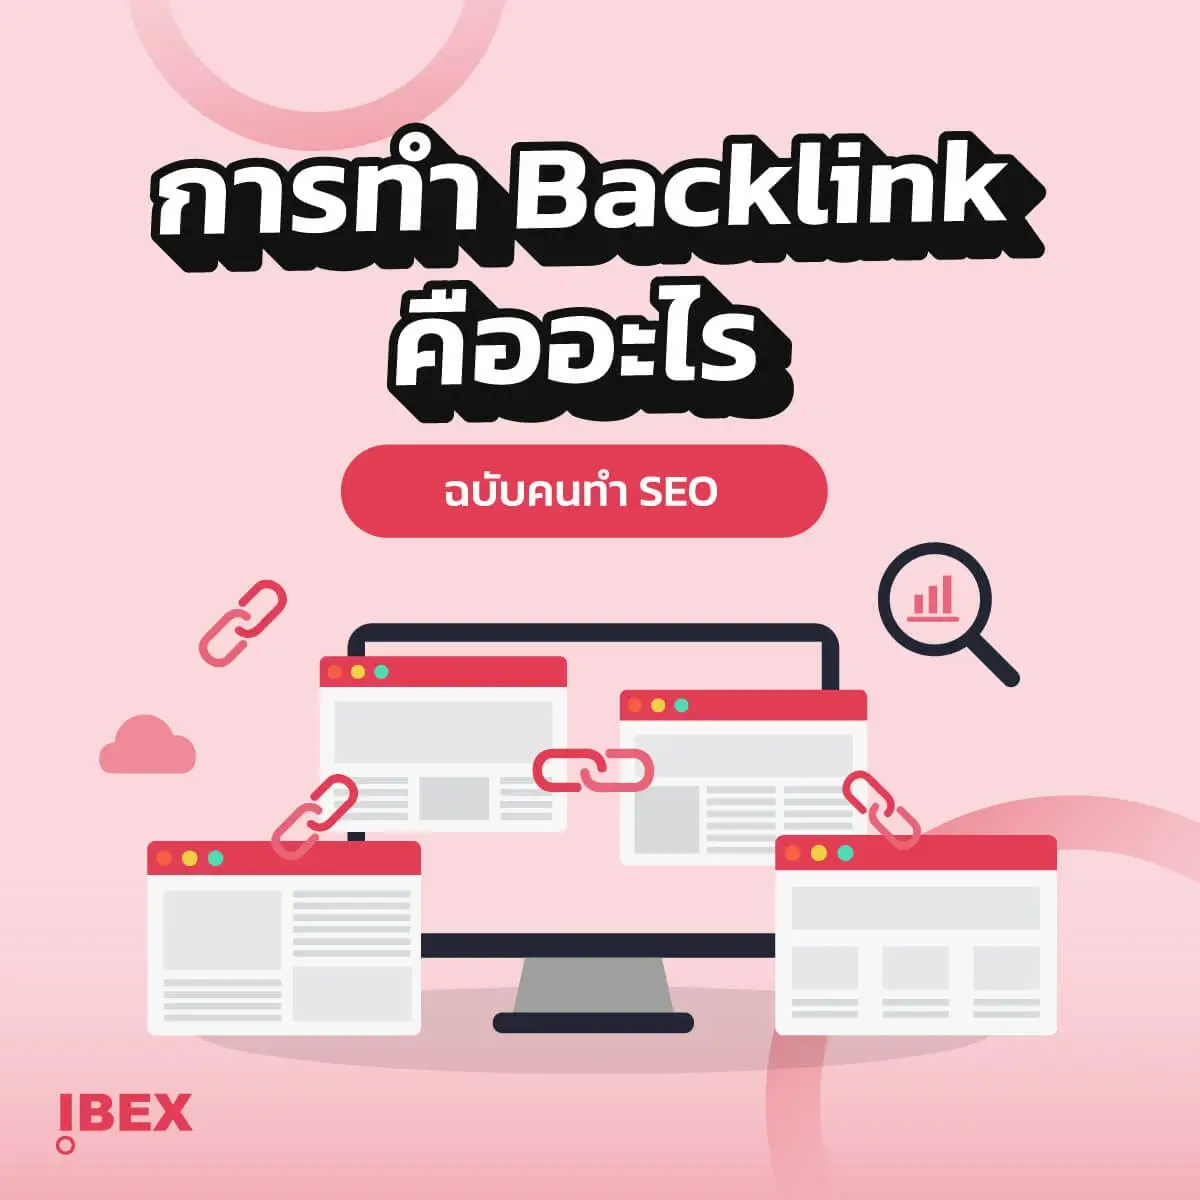 Backlink คืออะไร ฉบับมือใหม่ก็อ่านเข้าใจได้ ง่ายจริง!